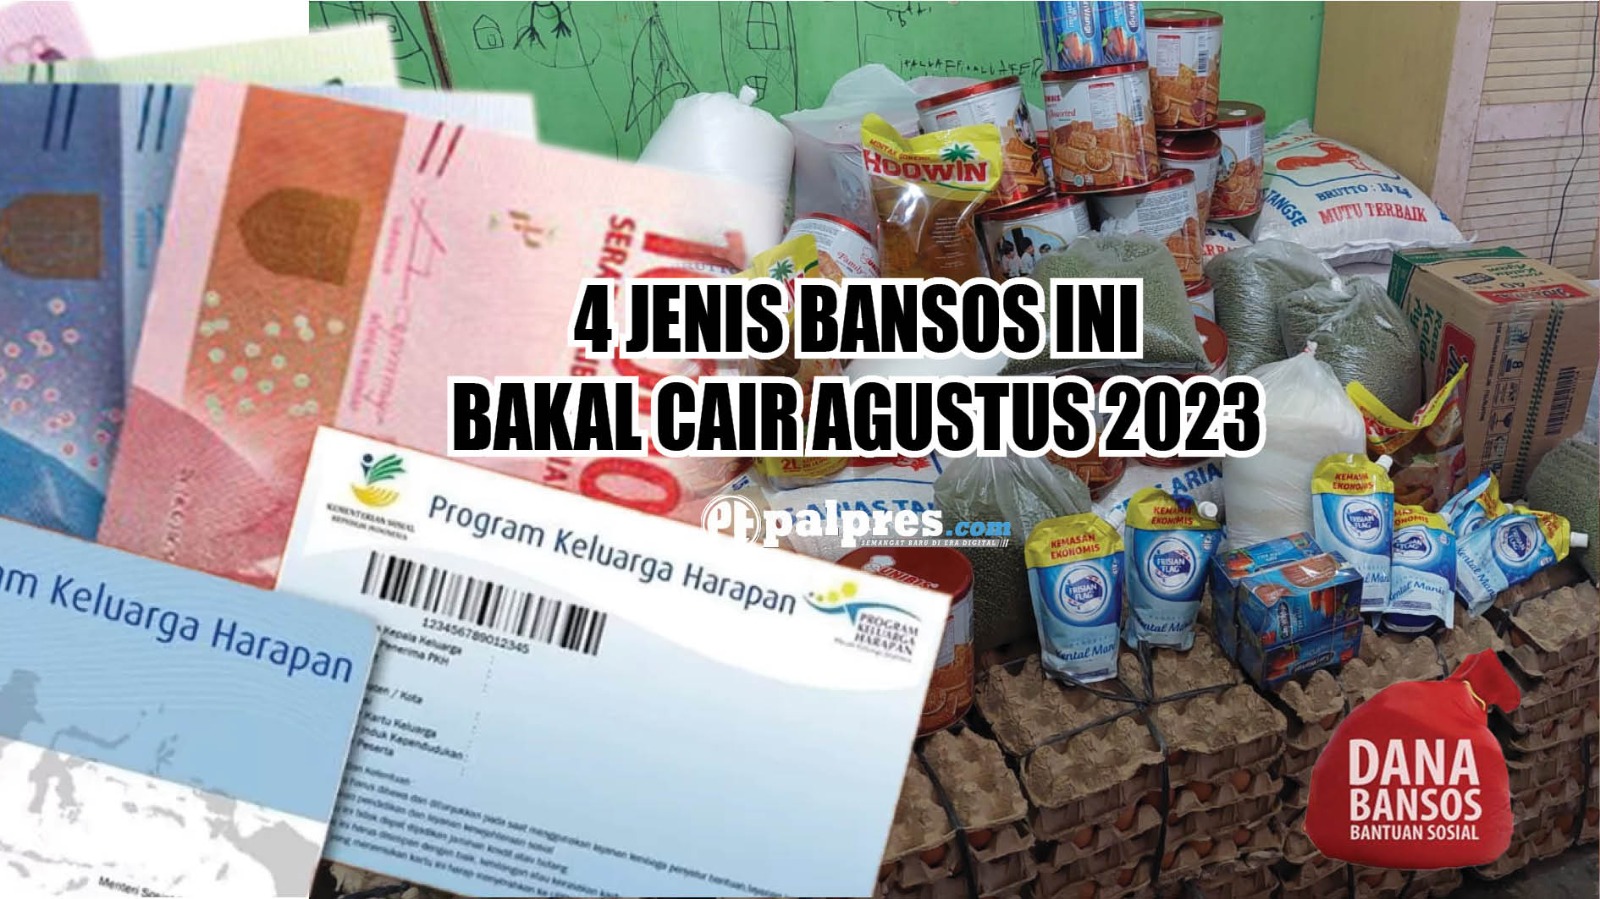 Selain Bansos PKH dan BPNT Sembako, Berikut 2 Jenis Bansos yang Bakal Cair Agustus 2023